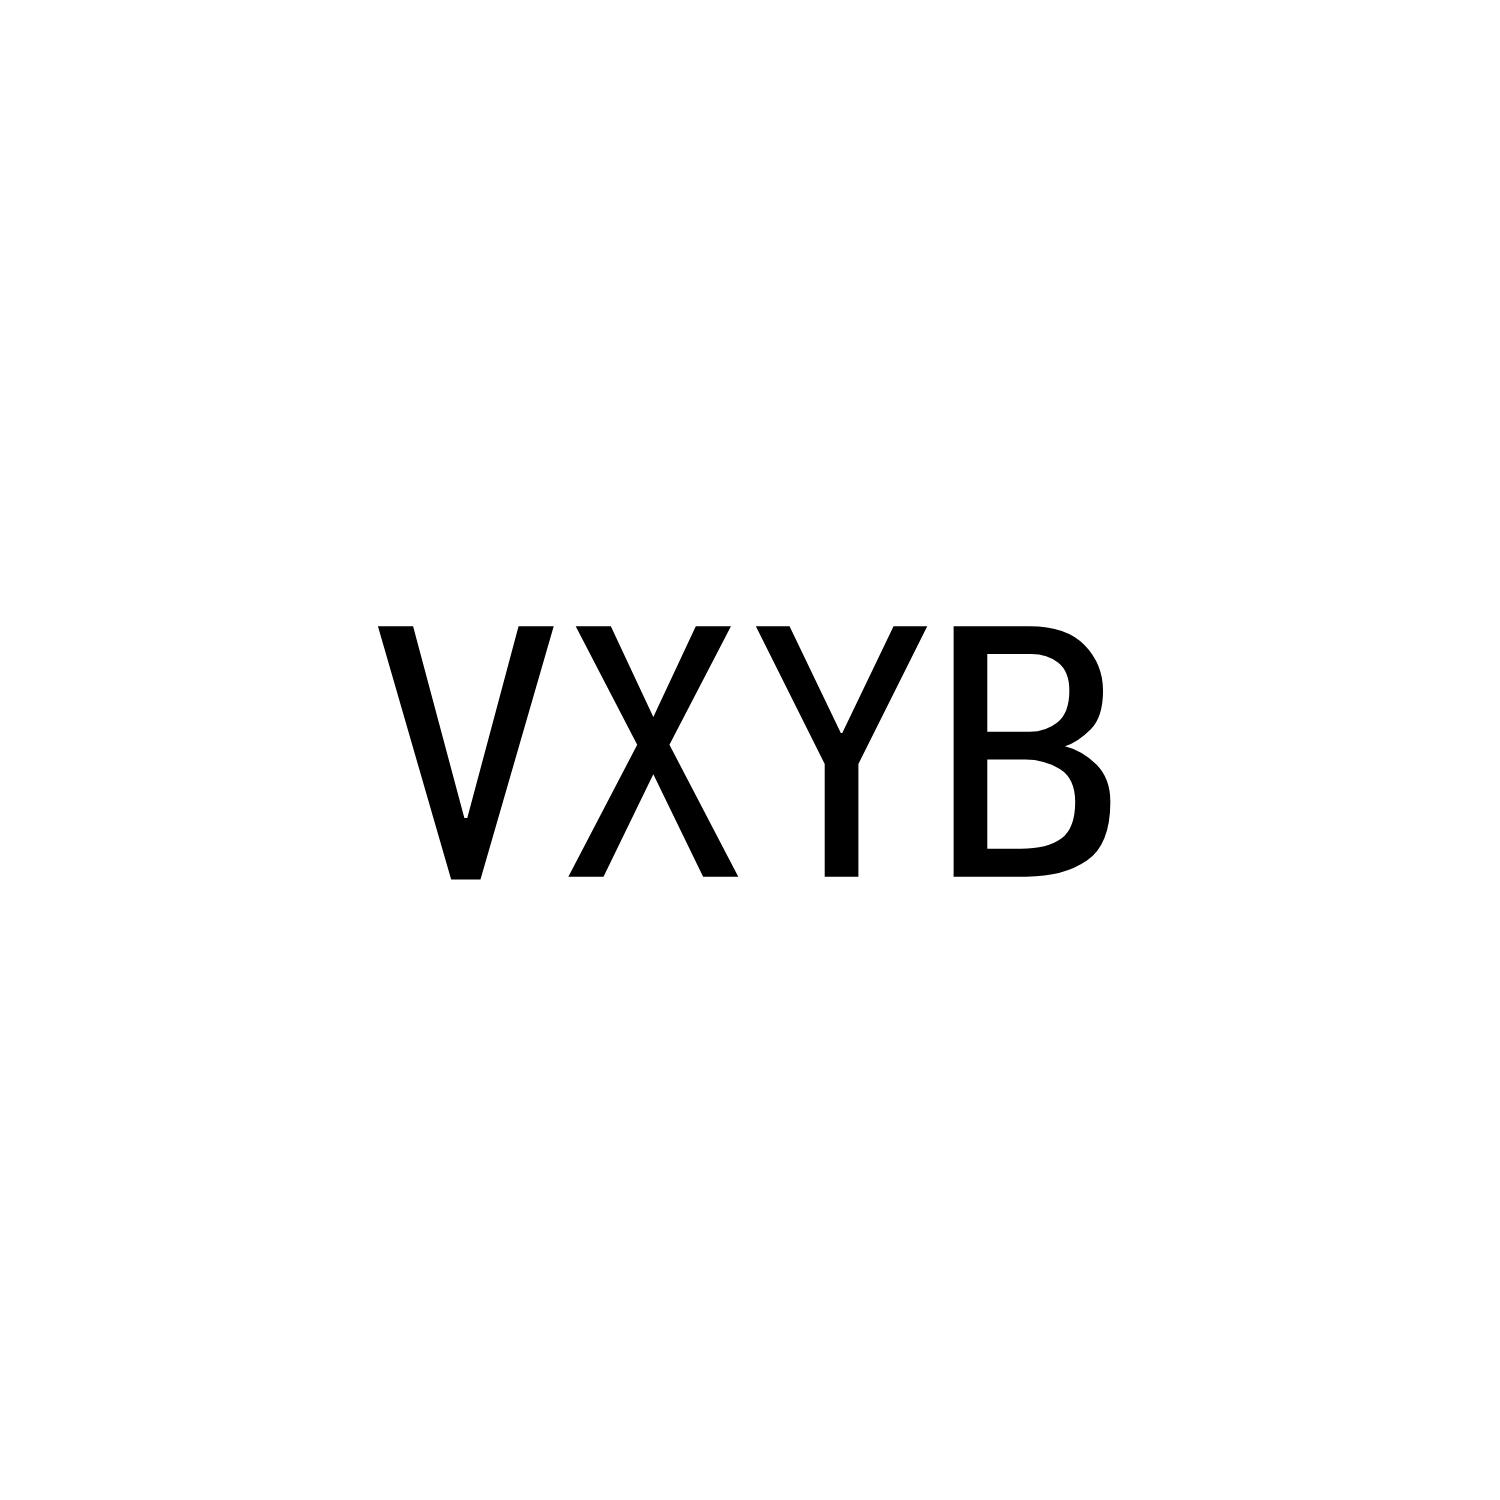 VXYB